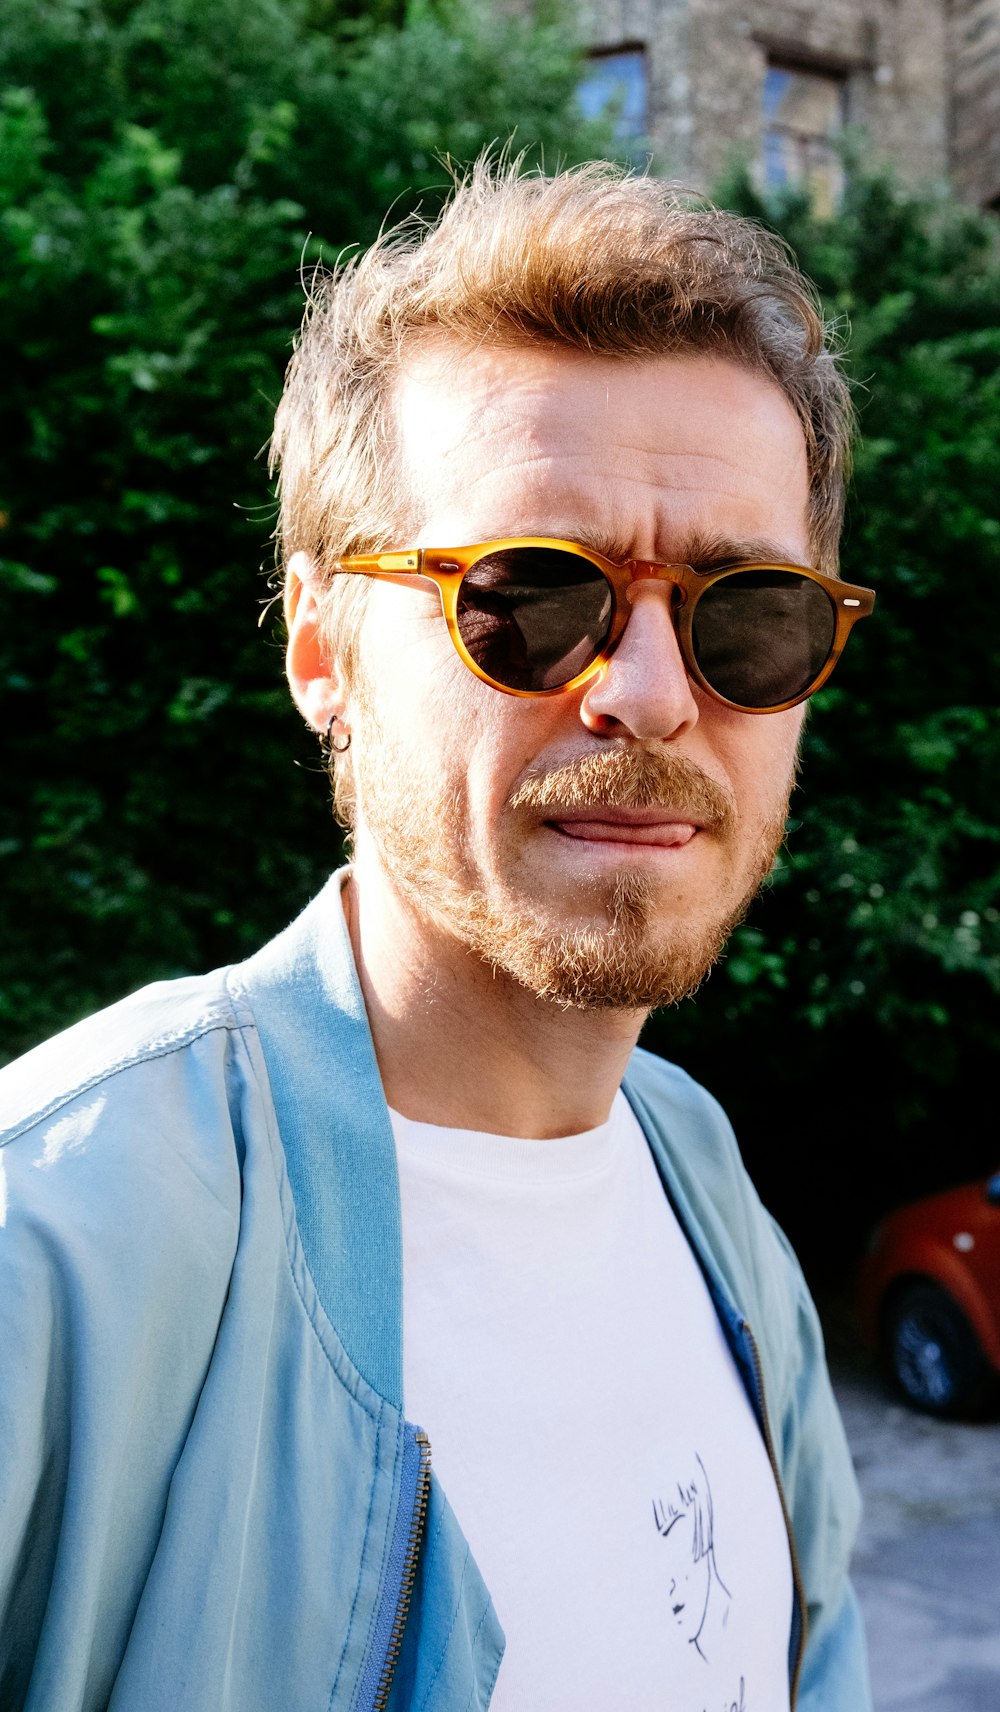 갈색 선글라스를 쓴 흰색 크루넥 셔츠를 입은 남자